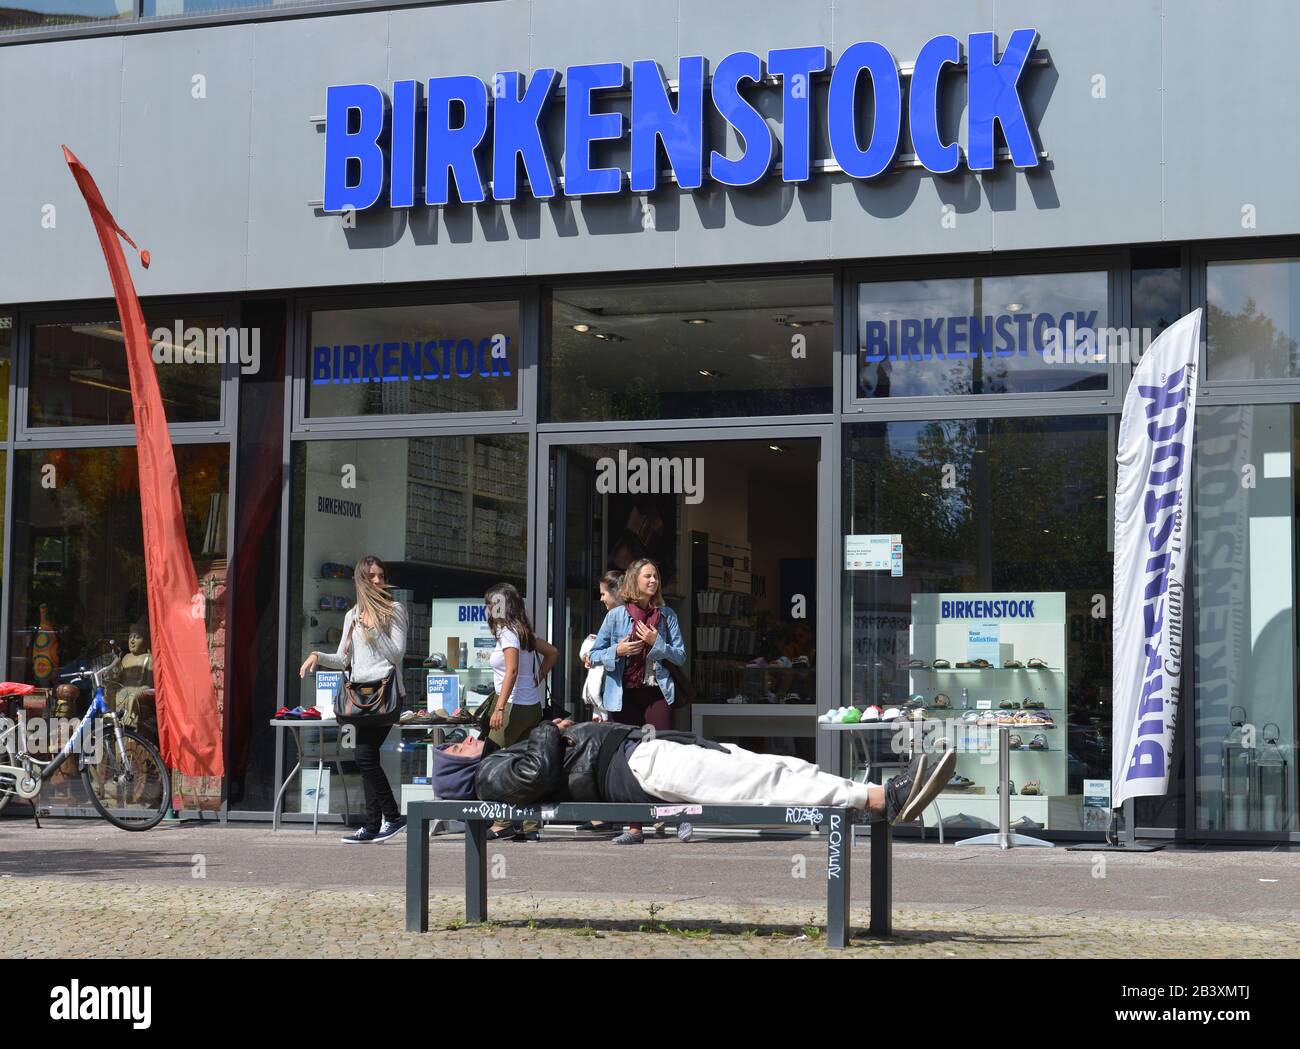 Birkenstock Geschaeft, Karl-Liebknecht-Straße, Mitte, Berlin, Deutschland  Stockfotografie - Alamy